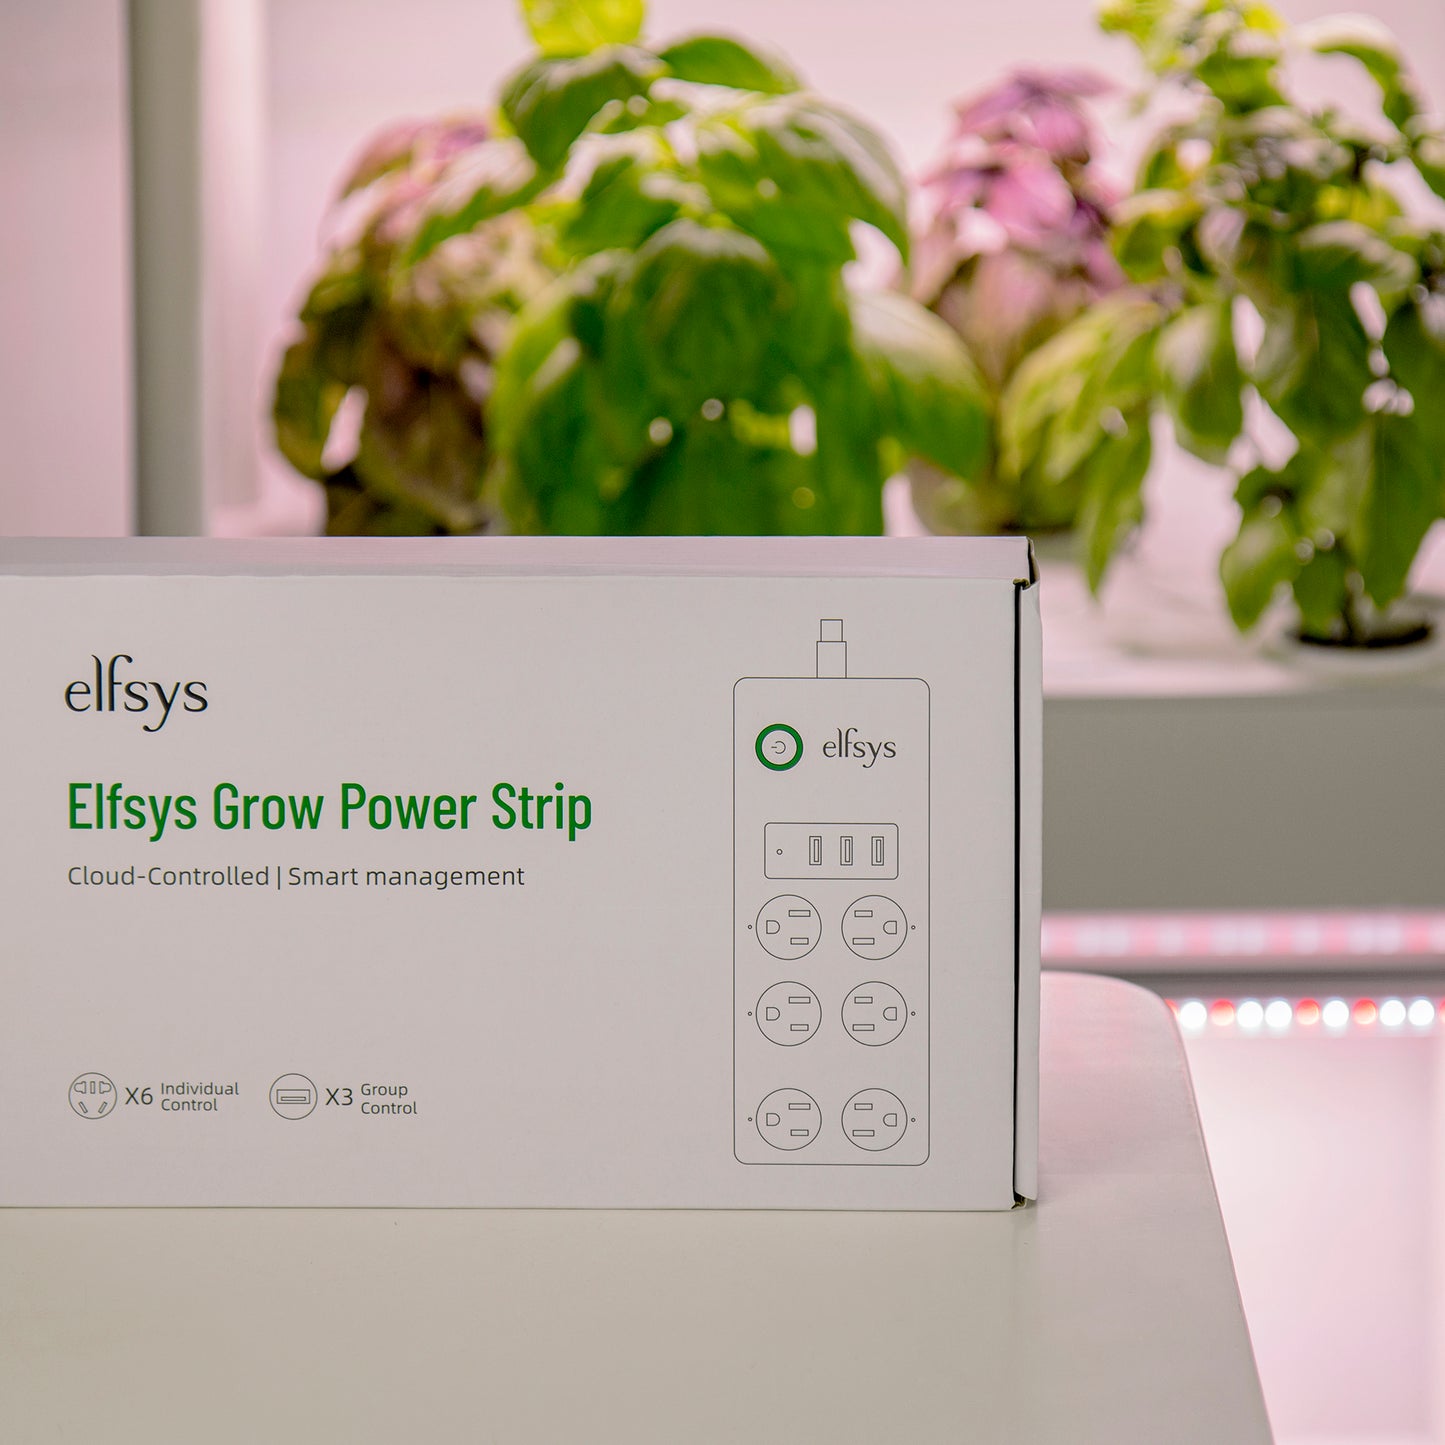 Elfsys Grow Power Strip